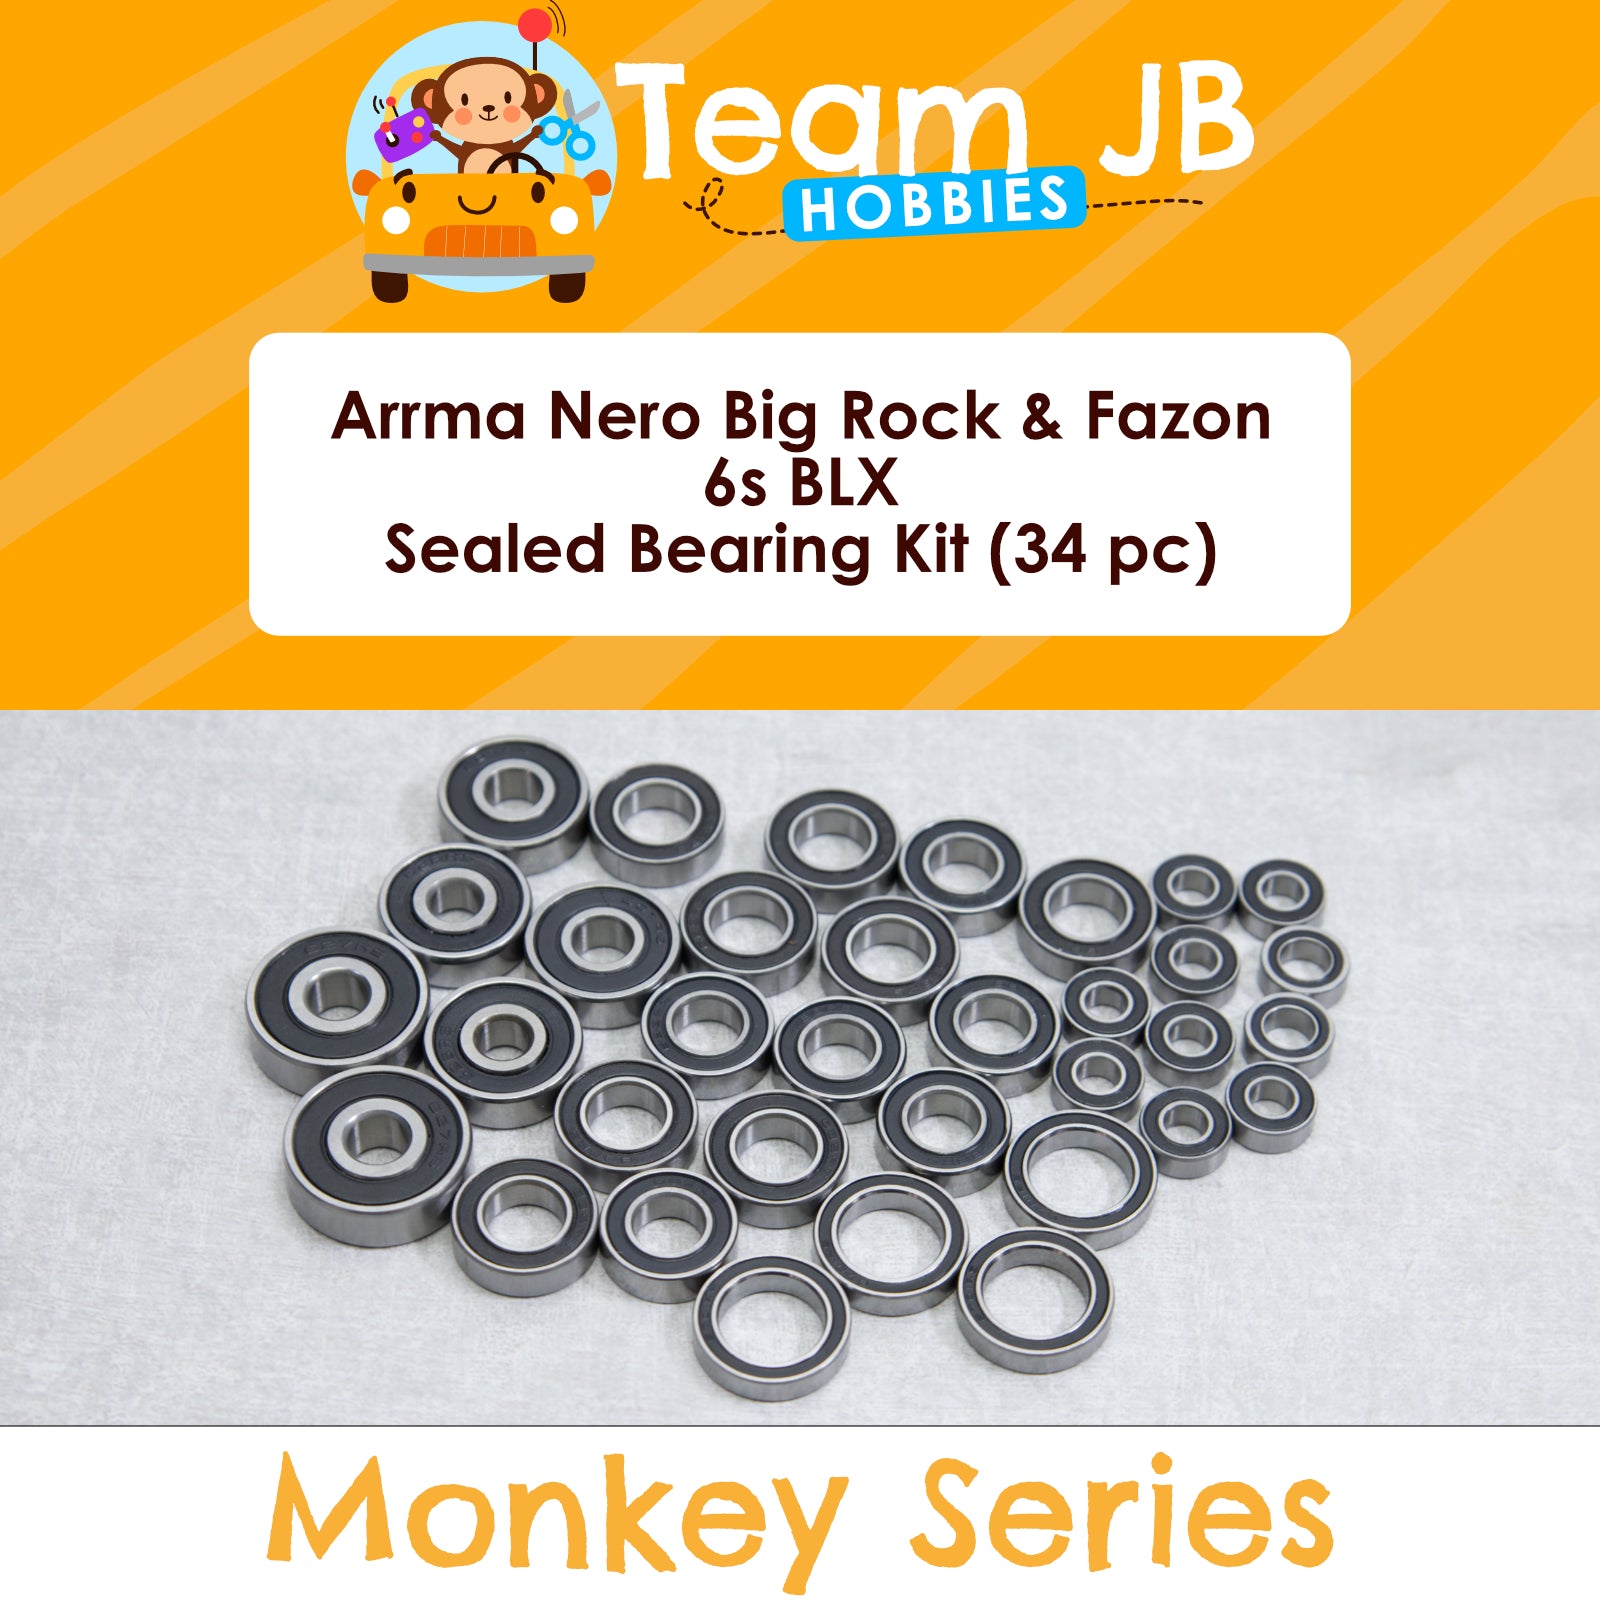 Arrma Nero Big Rock & Fazon 6s BLX Sealed Bearing Kit